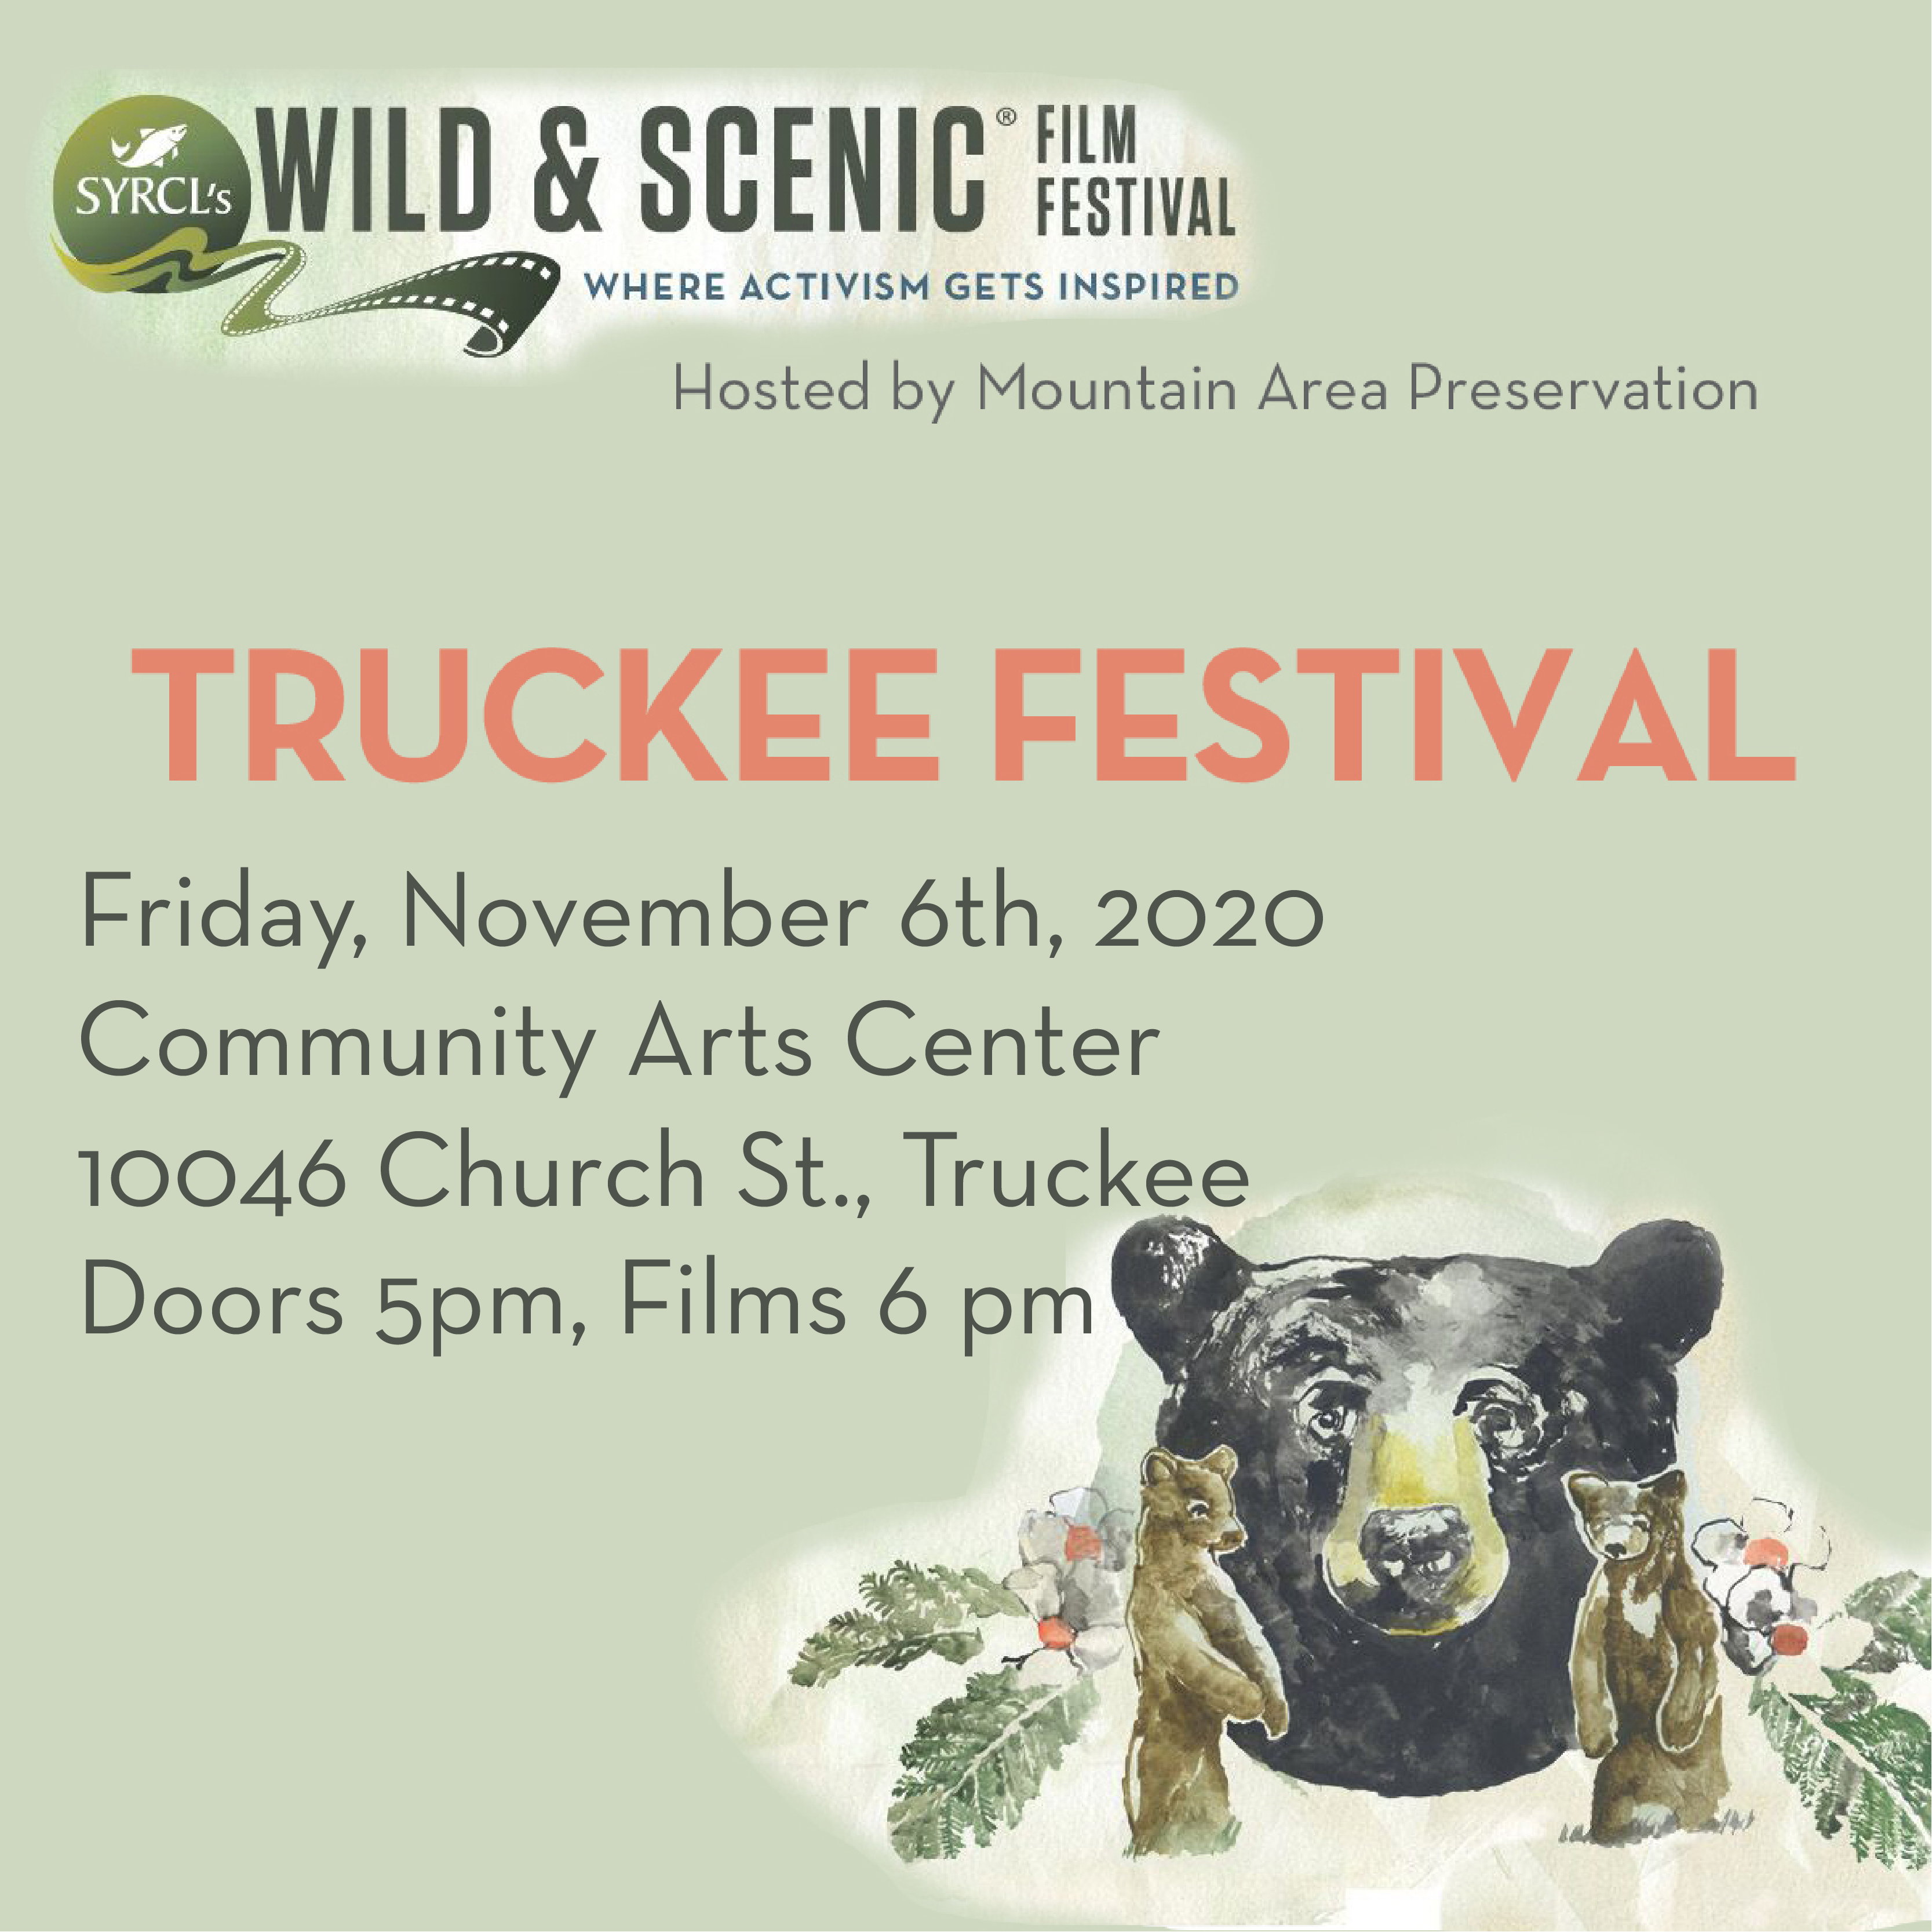 5th Annual Wild & Scenic Film Festival Truckee Take Care